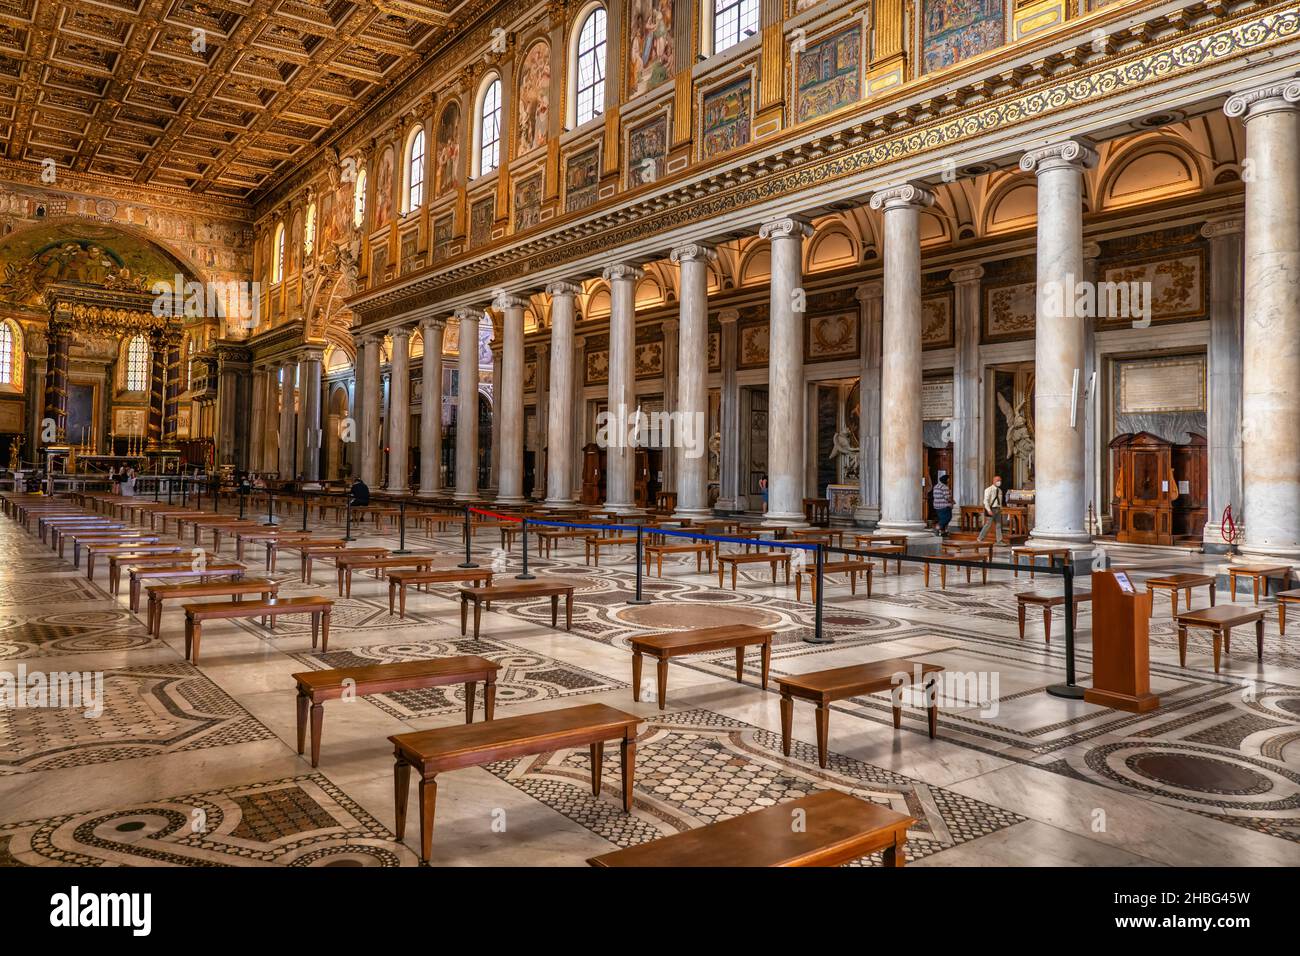 Rome, Italie, Basilique Sainte Marie majeure (Basilique de Santa Maria Maggiore) intérieur Banque D'Images